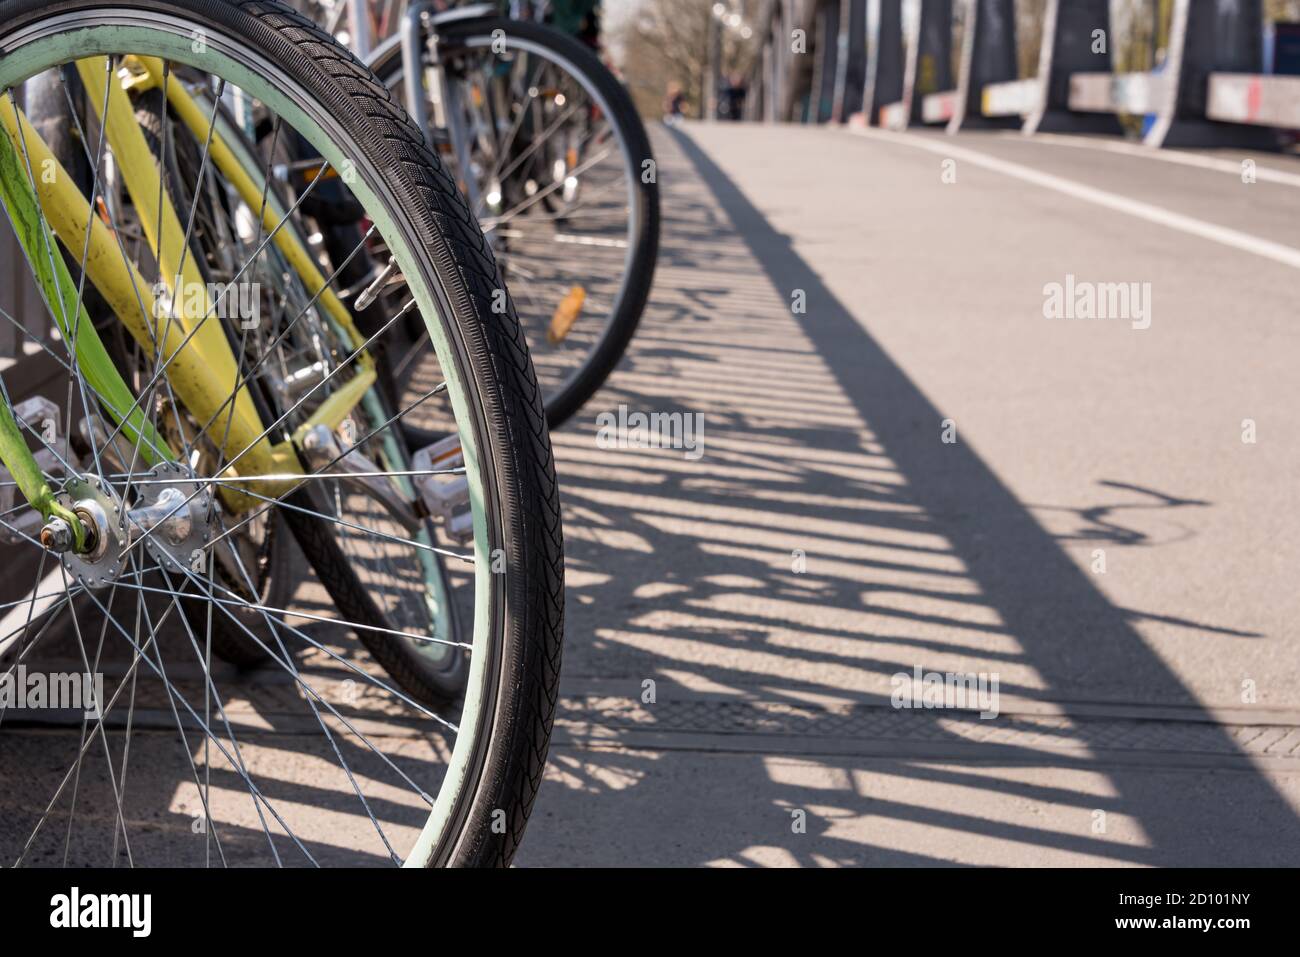 Bicicletta caotico/parcheggio bici in una città - trasporti, il trasporto pubblico - furto di biciclette, vecchie biciclette, moto furto - Spazio di copia Foto Stock